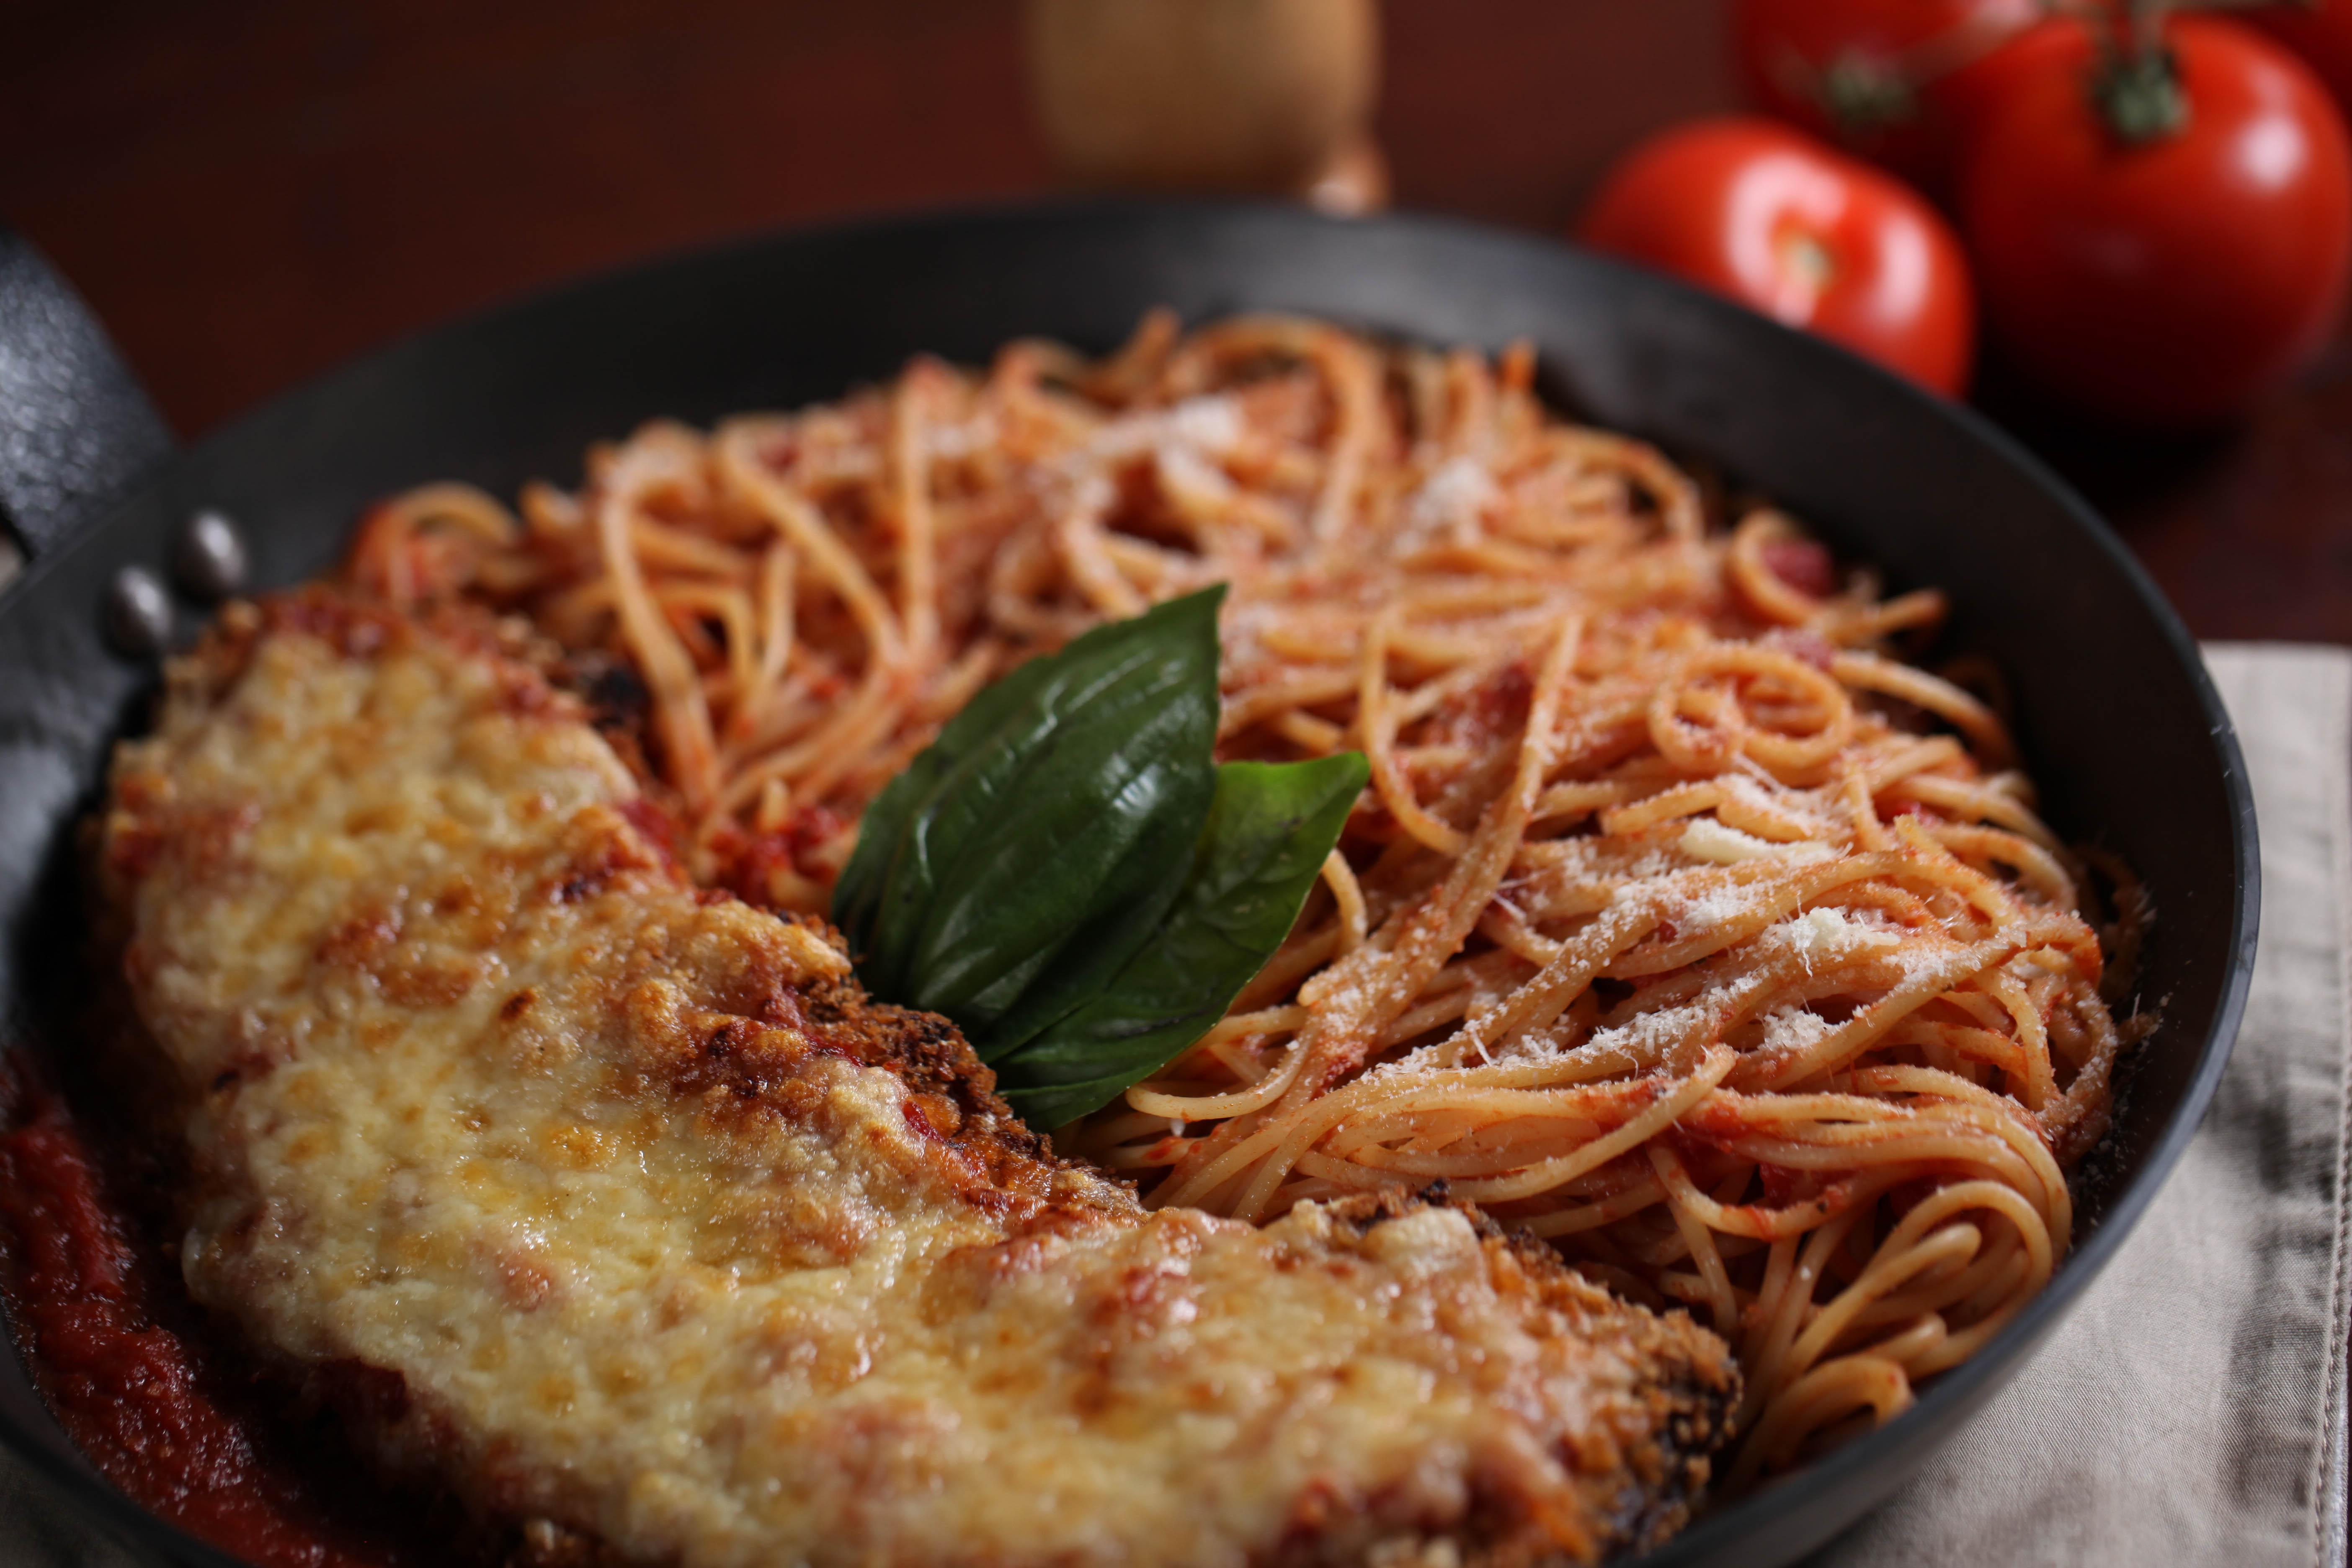 LISTA: Conheça cinco novos pratos do cardápio do Vignoli